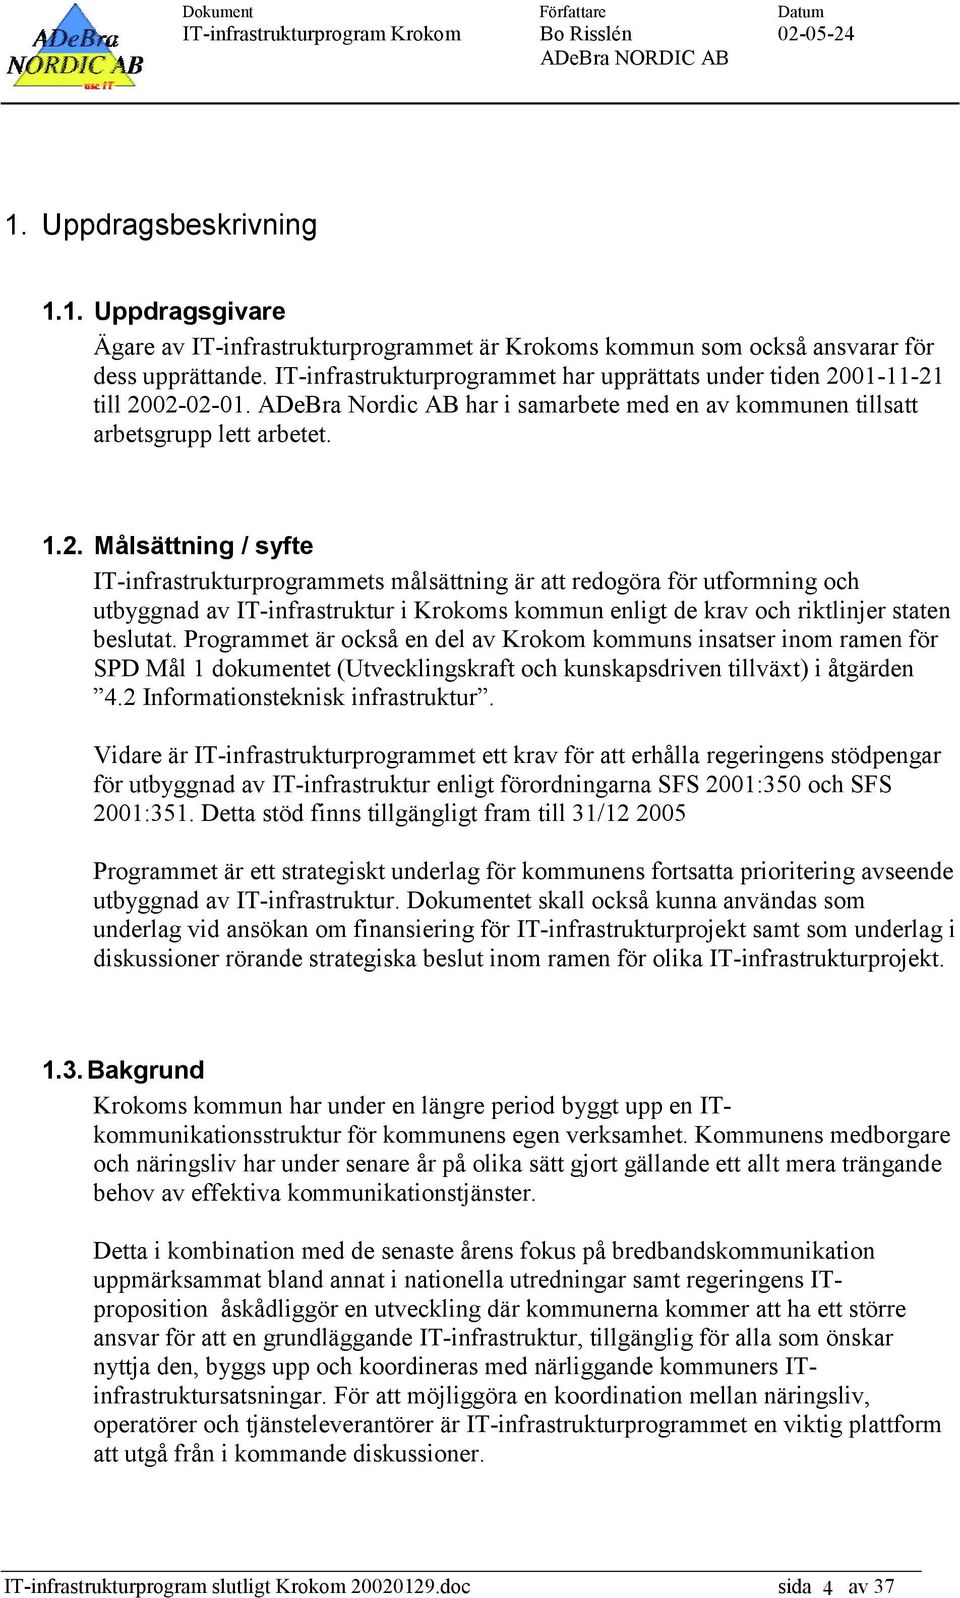 01-11-21 till 2002-02-01. ADeBra Nordic AB har i samarbete med en av kommunen tillsatt arbetsgrupp lett arbetet. 1.2. Målsättning / syfte IT-infrastrukturprogrammets målsättning är att redogöra för utformning och utbyggnad av IT-infrastruktur i Krokoms kommun enligt de krav och riktlinjer staten beslutat.